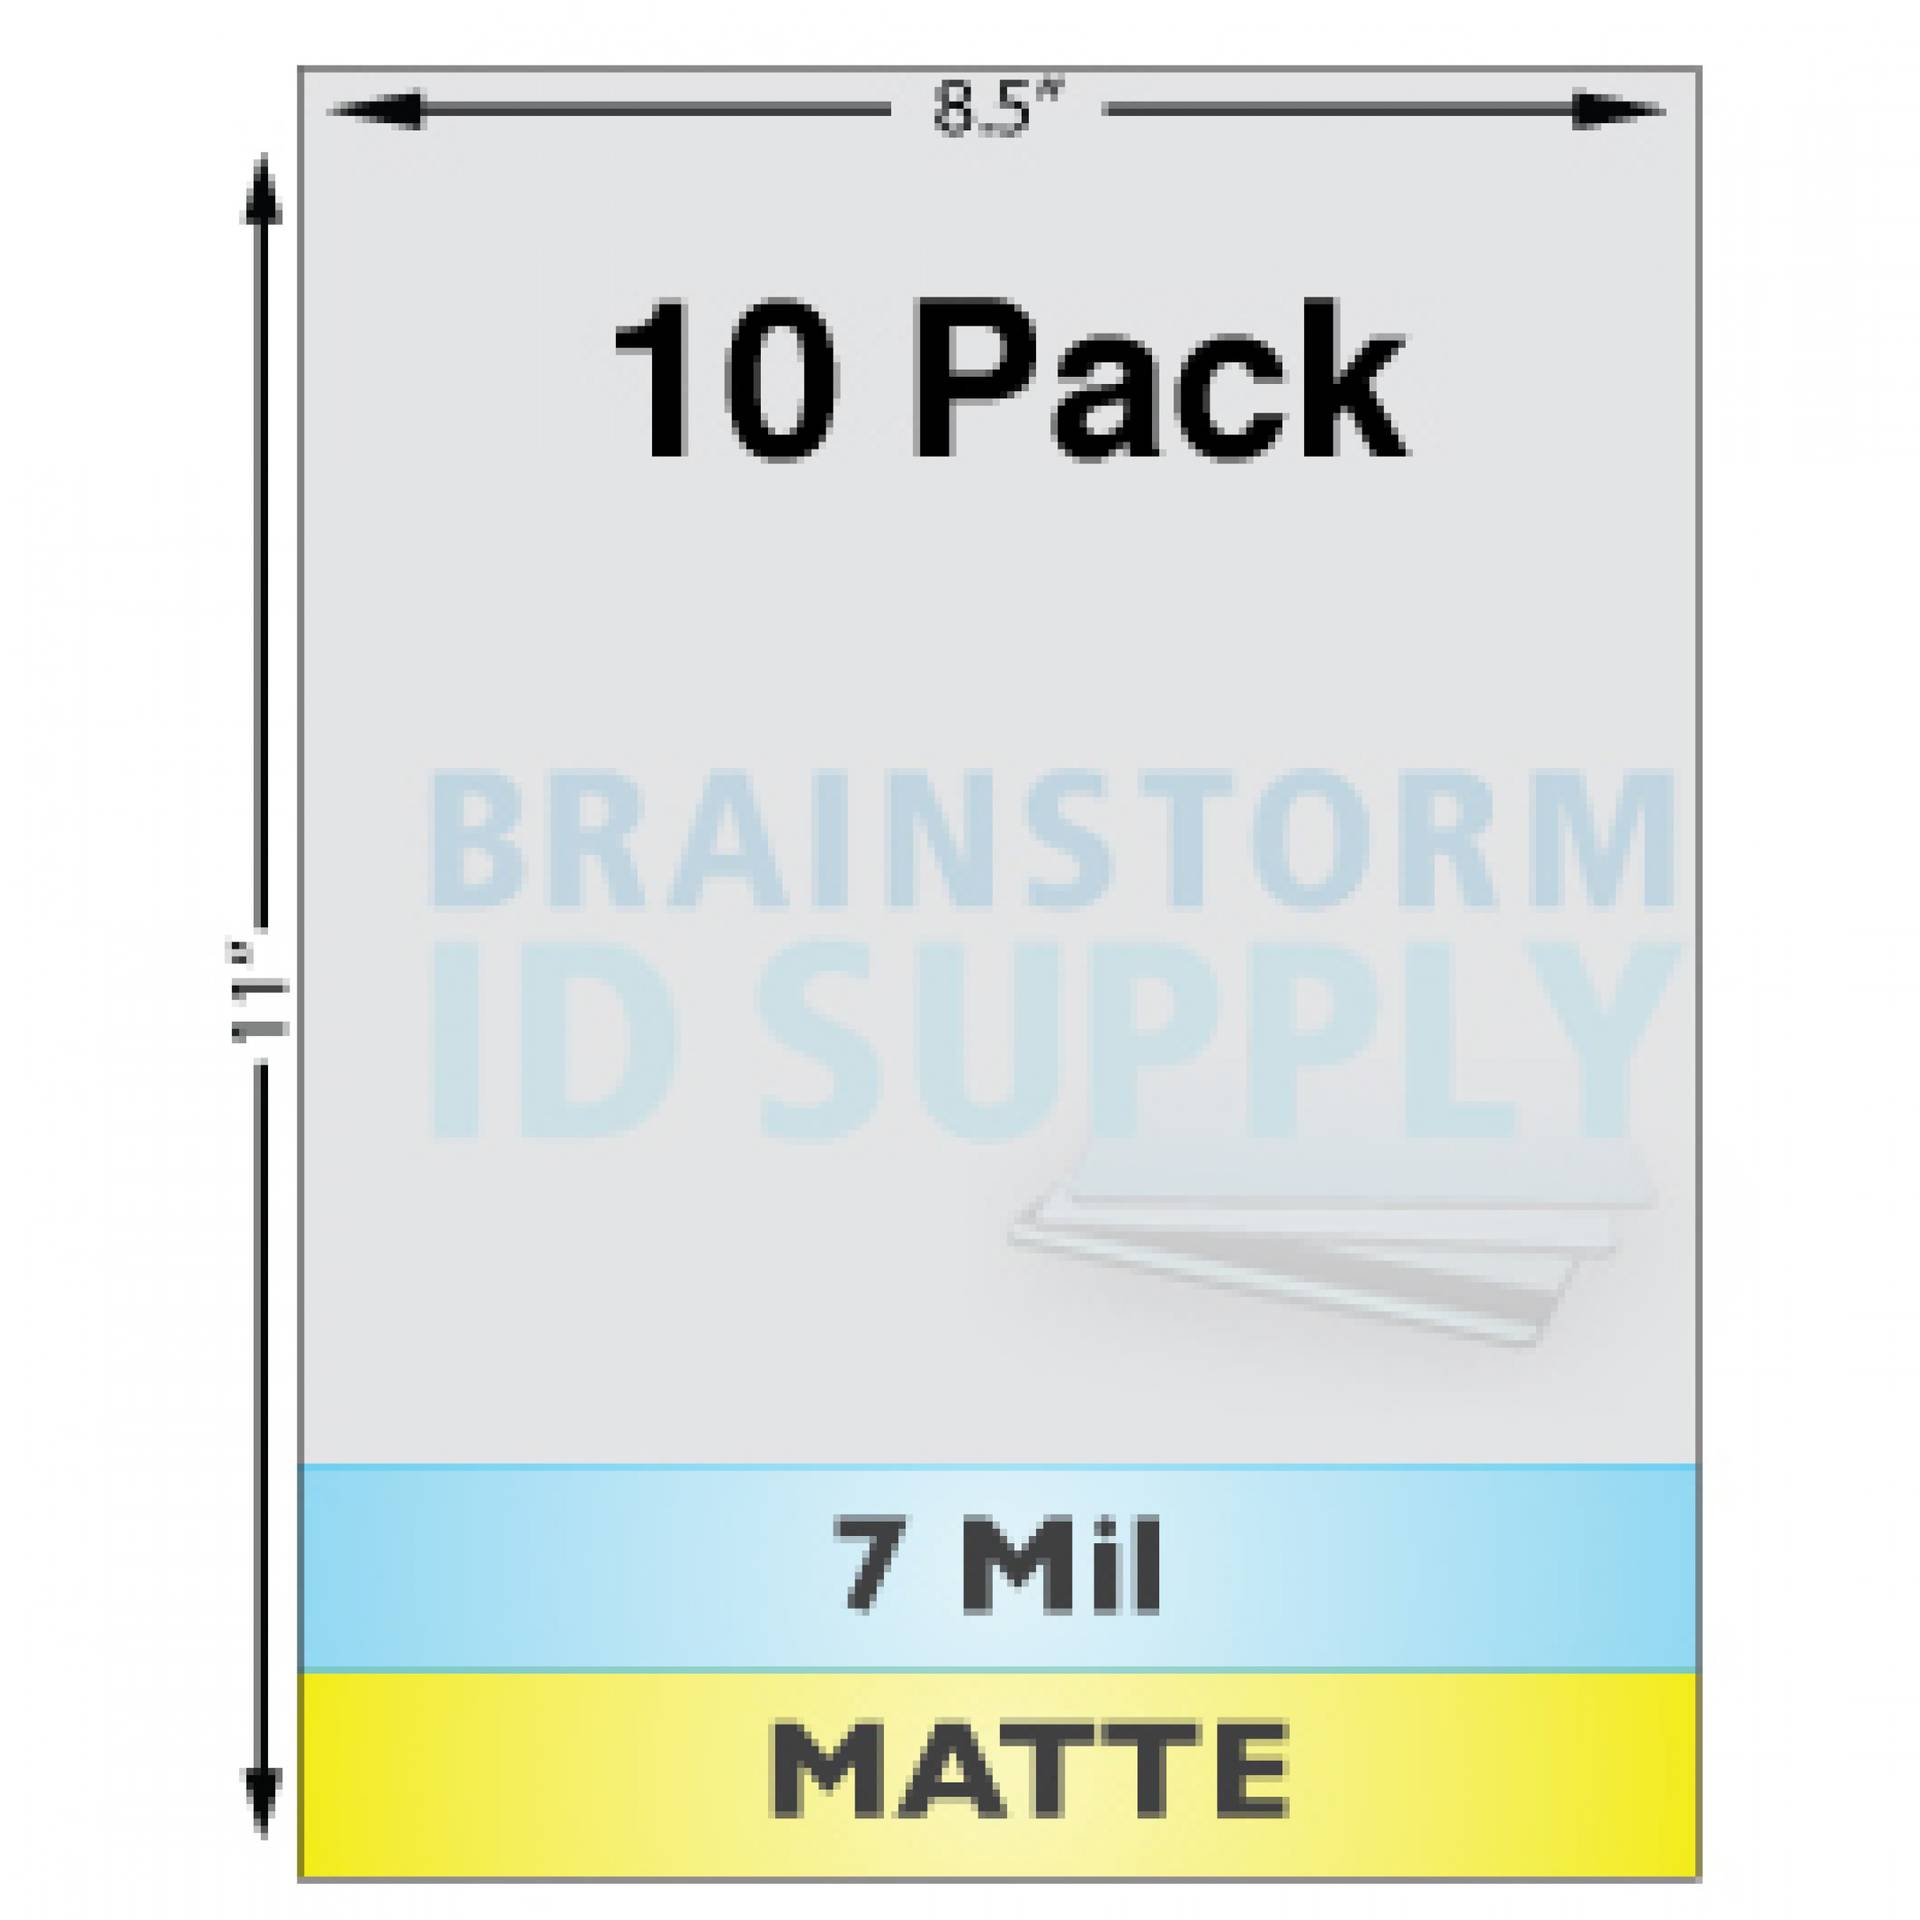 7 Mil Matte Full Sheet Laminates - 10 Pack